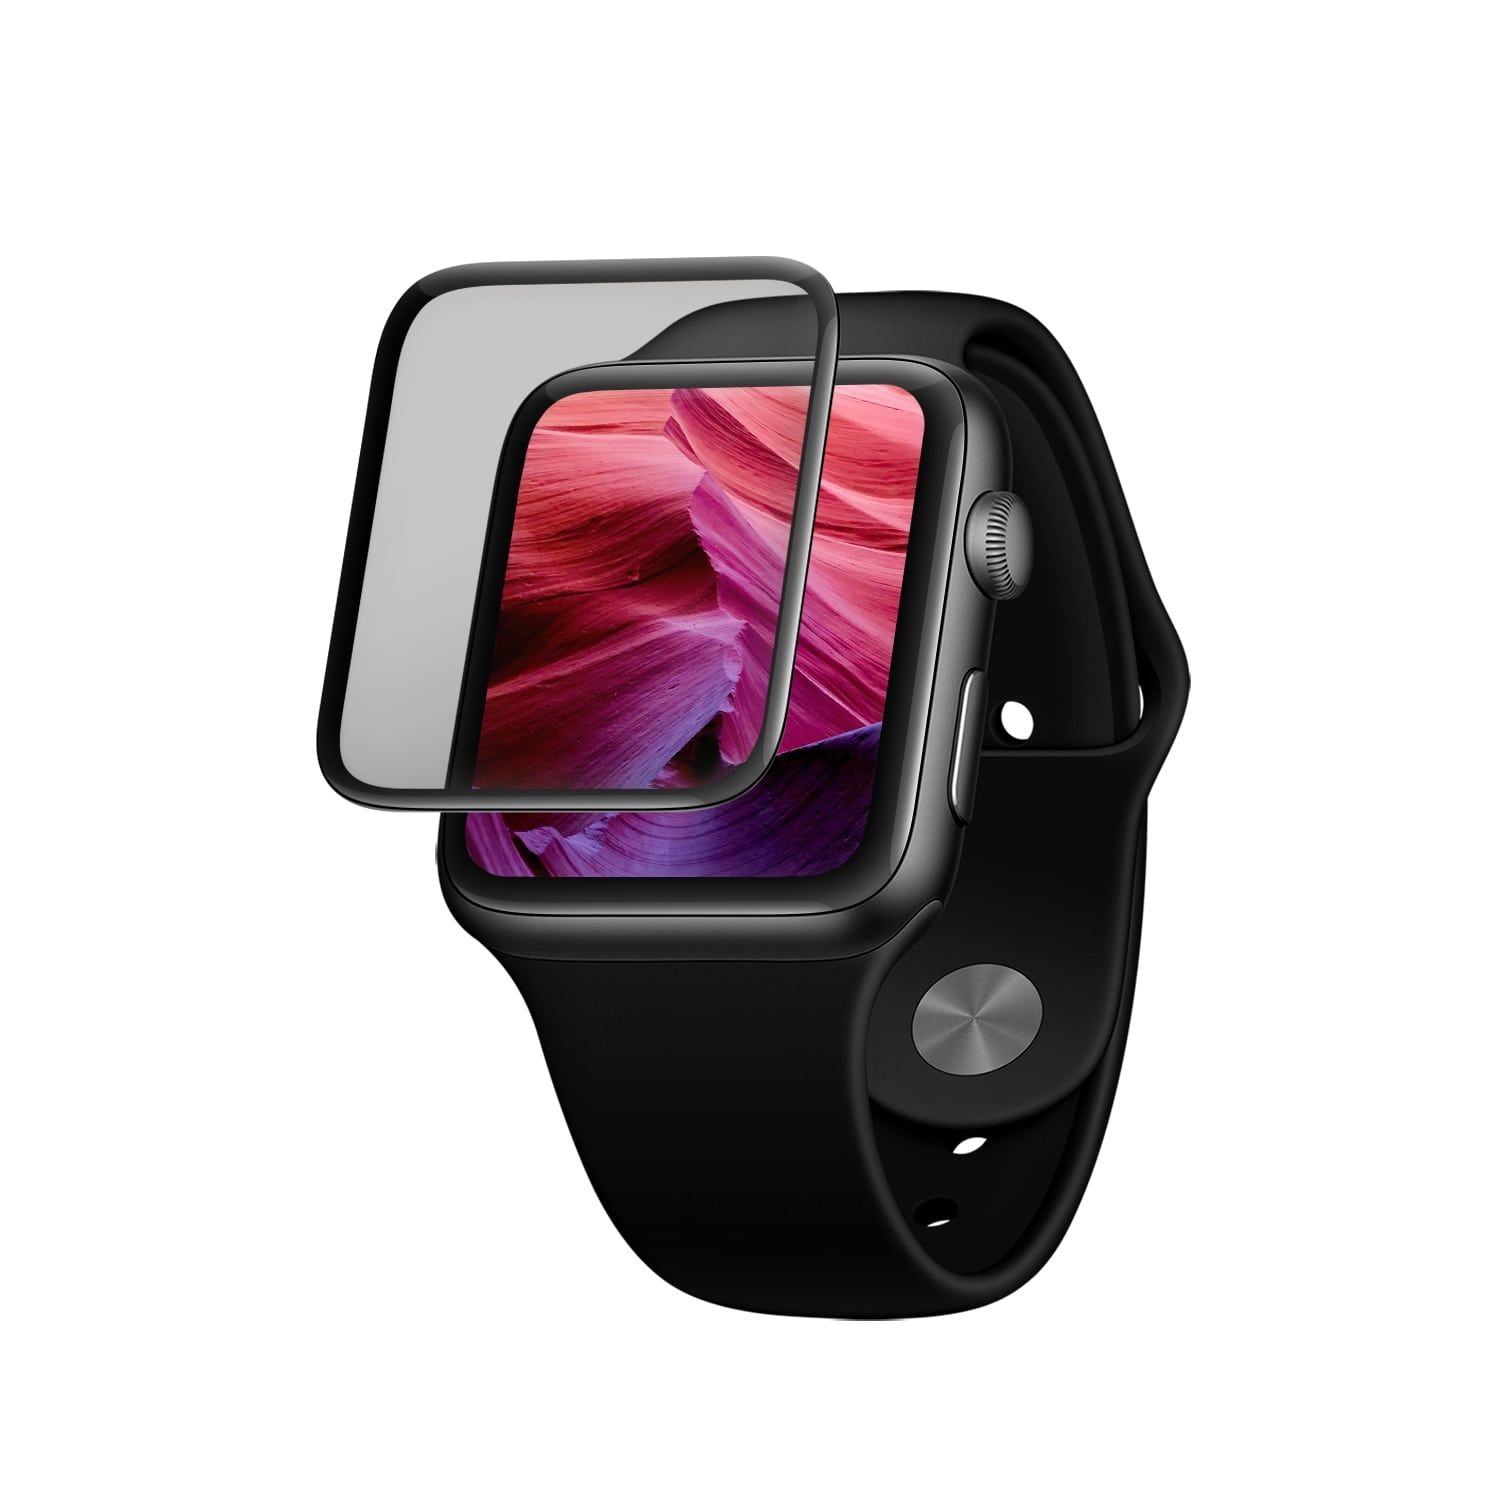 Ochranné tvrzené sklo 3D Full-Cover pro Apple Watch 44mm s aplikátorem, s lepením přes celý displej, černé